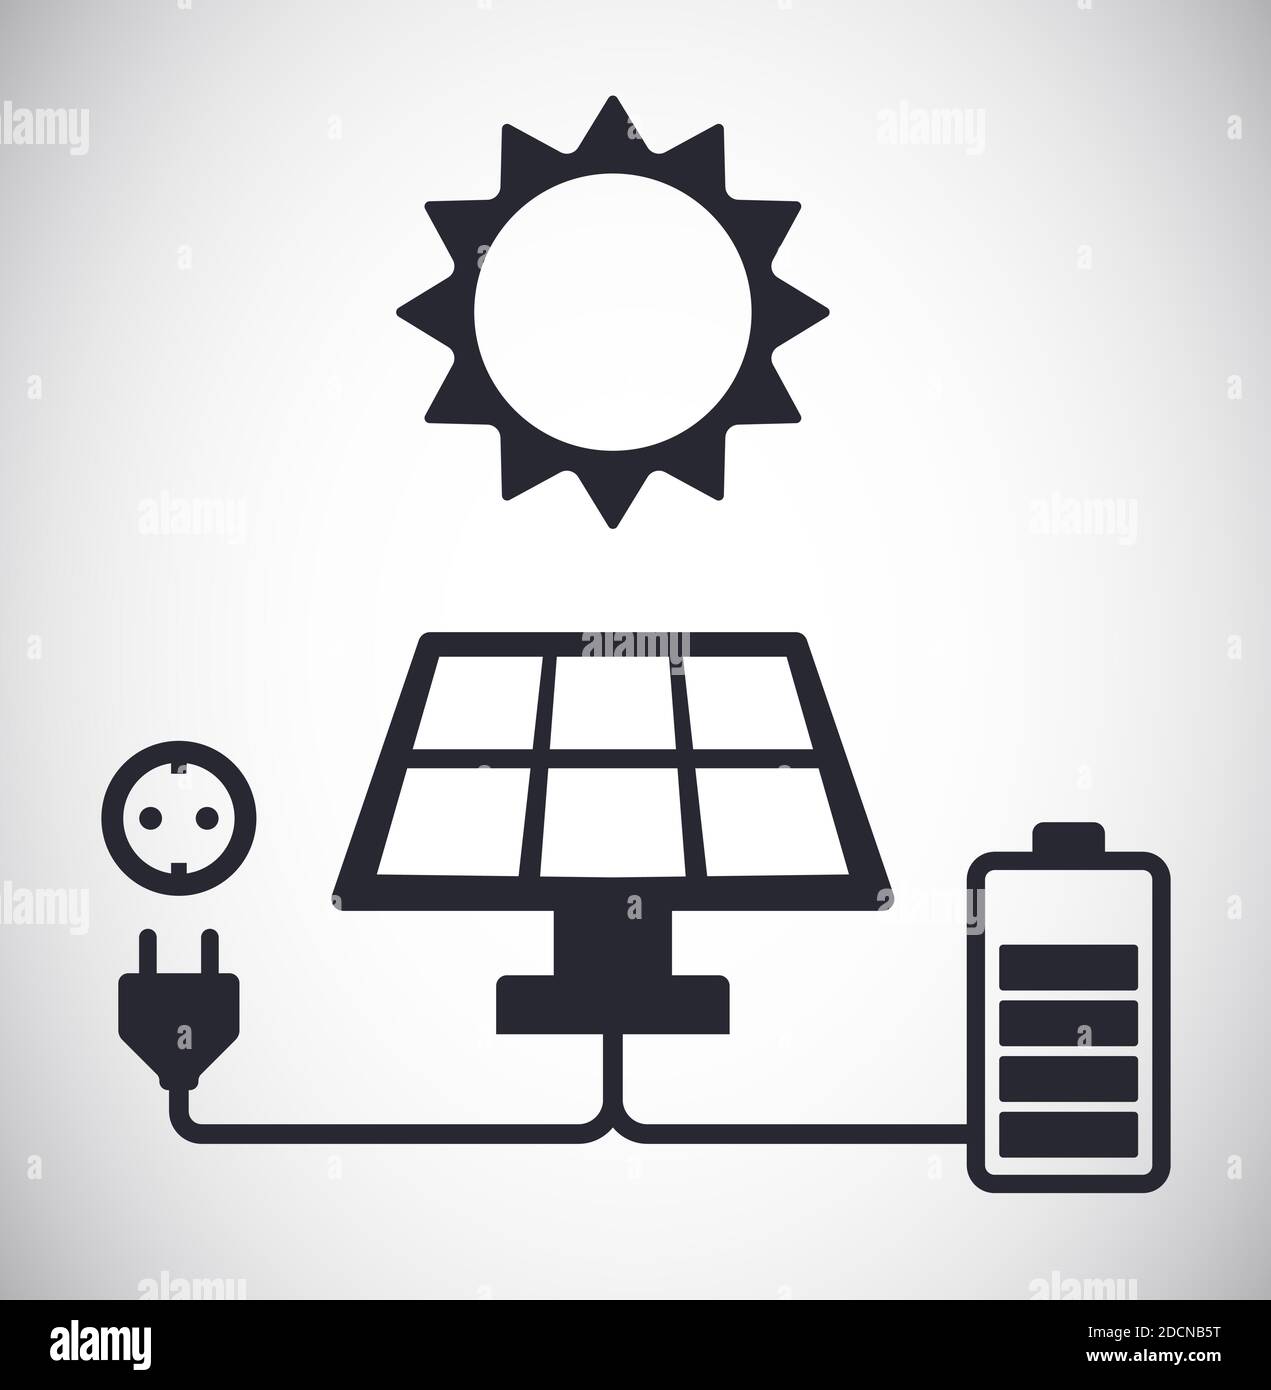 Il pannello energia solare sta caricando una batteria e un'alimentazione alternativa illustrazione vettoriale del concetto di spina Illustrazione Vettoriale